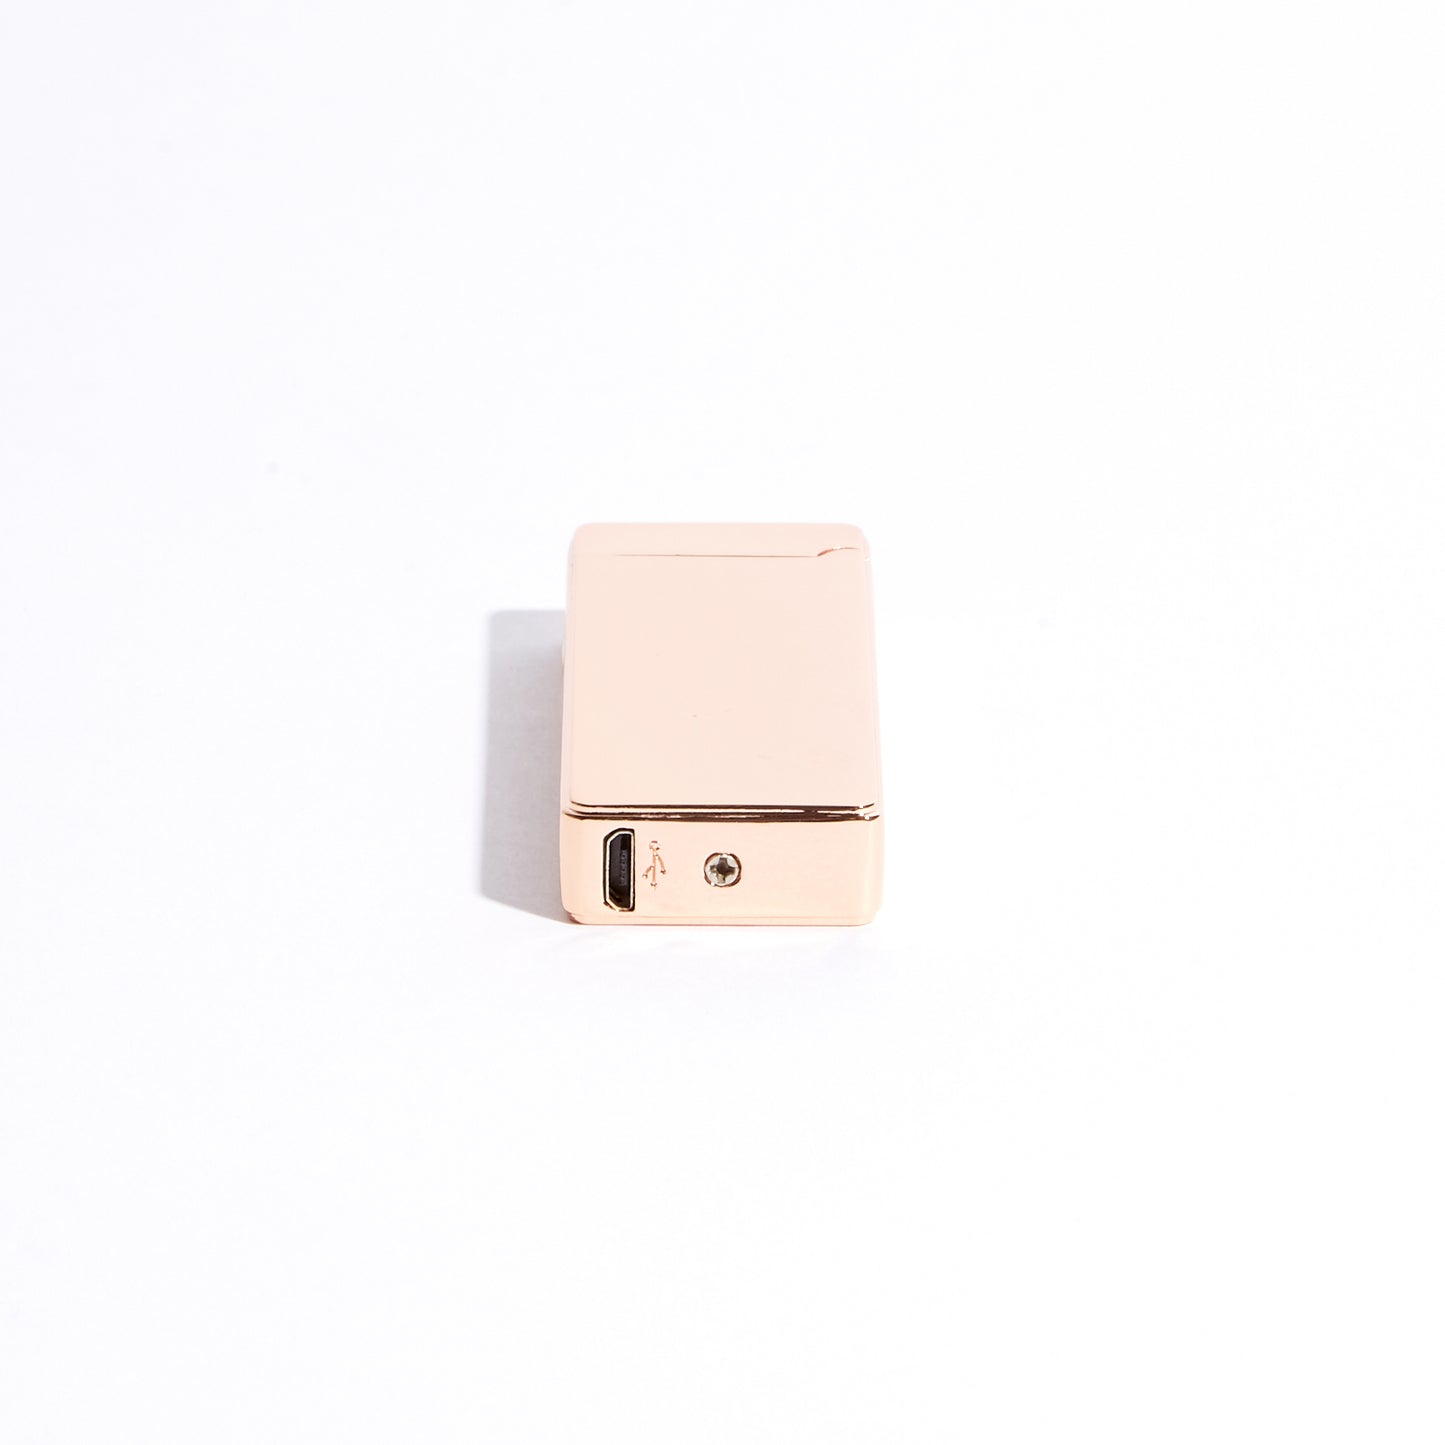 Pocket Electric Arc Lighter - Rose Gold